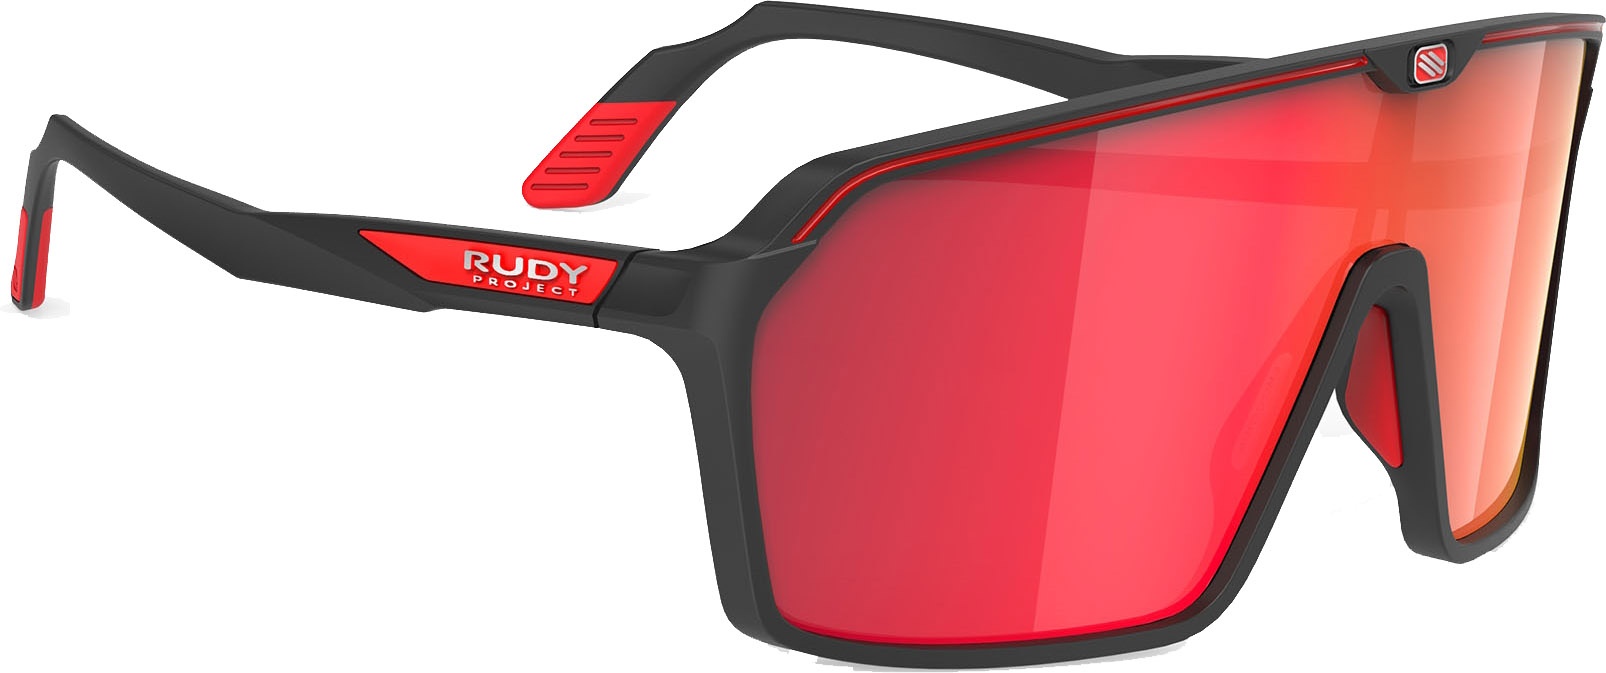 kig ind Søgemaskine optimering gås Rudy Project Spinshield Solbriller - Multilaser Red - Sort